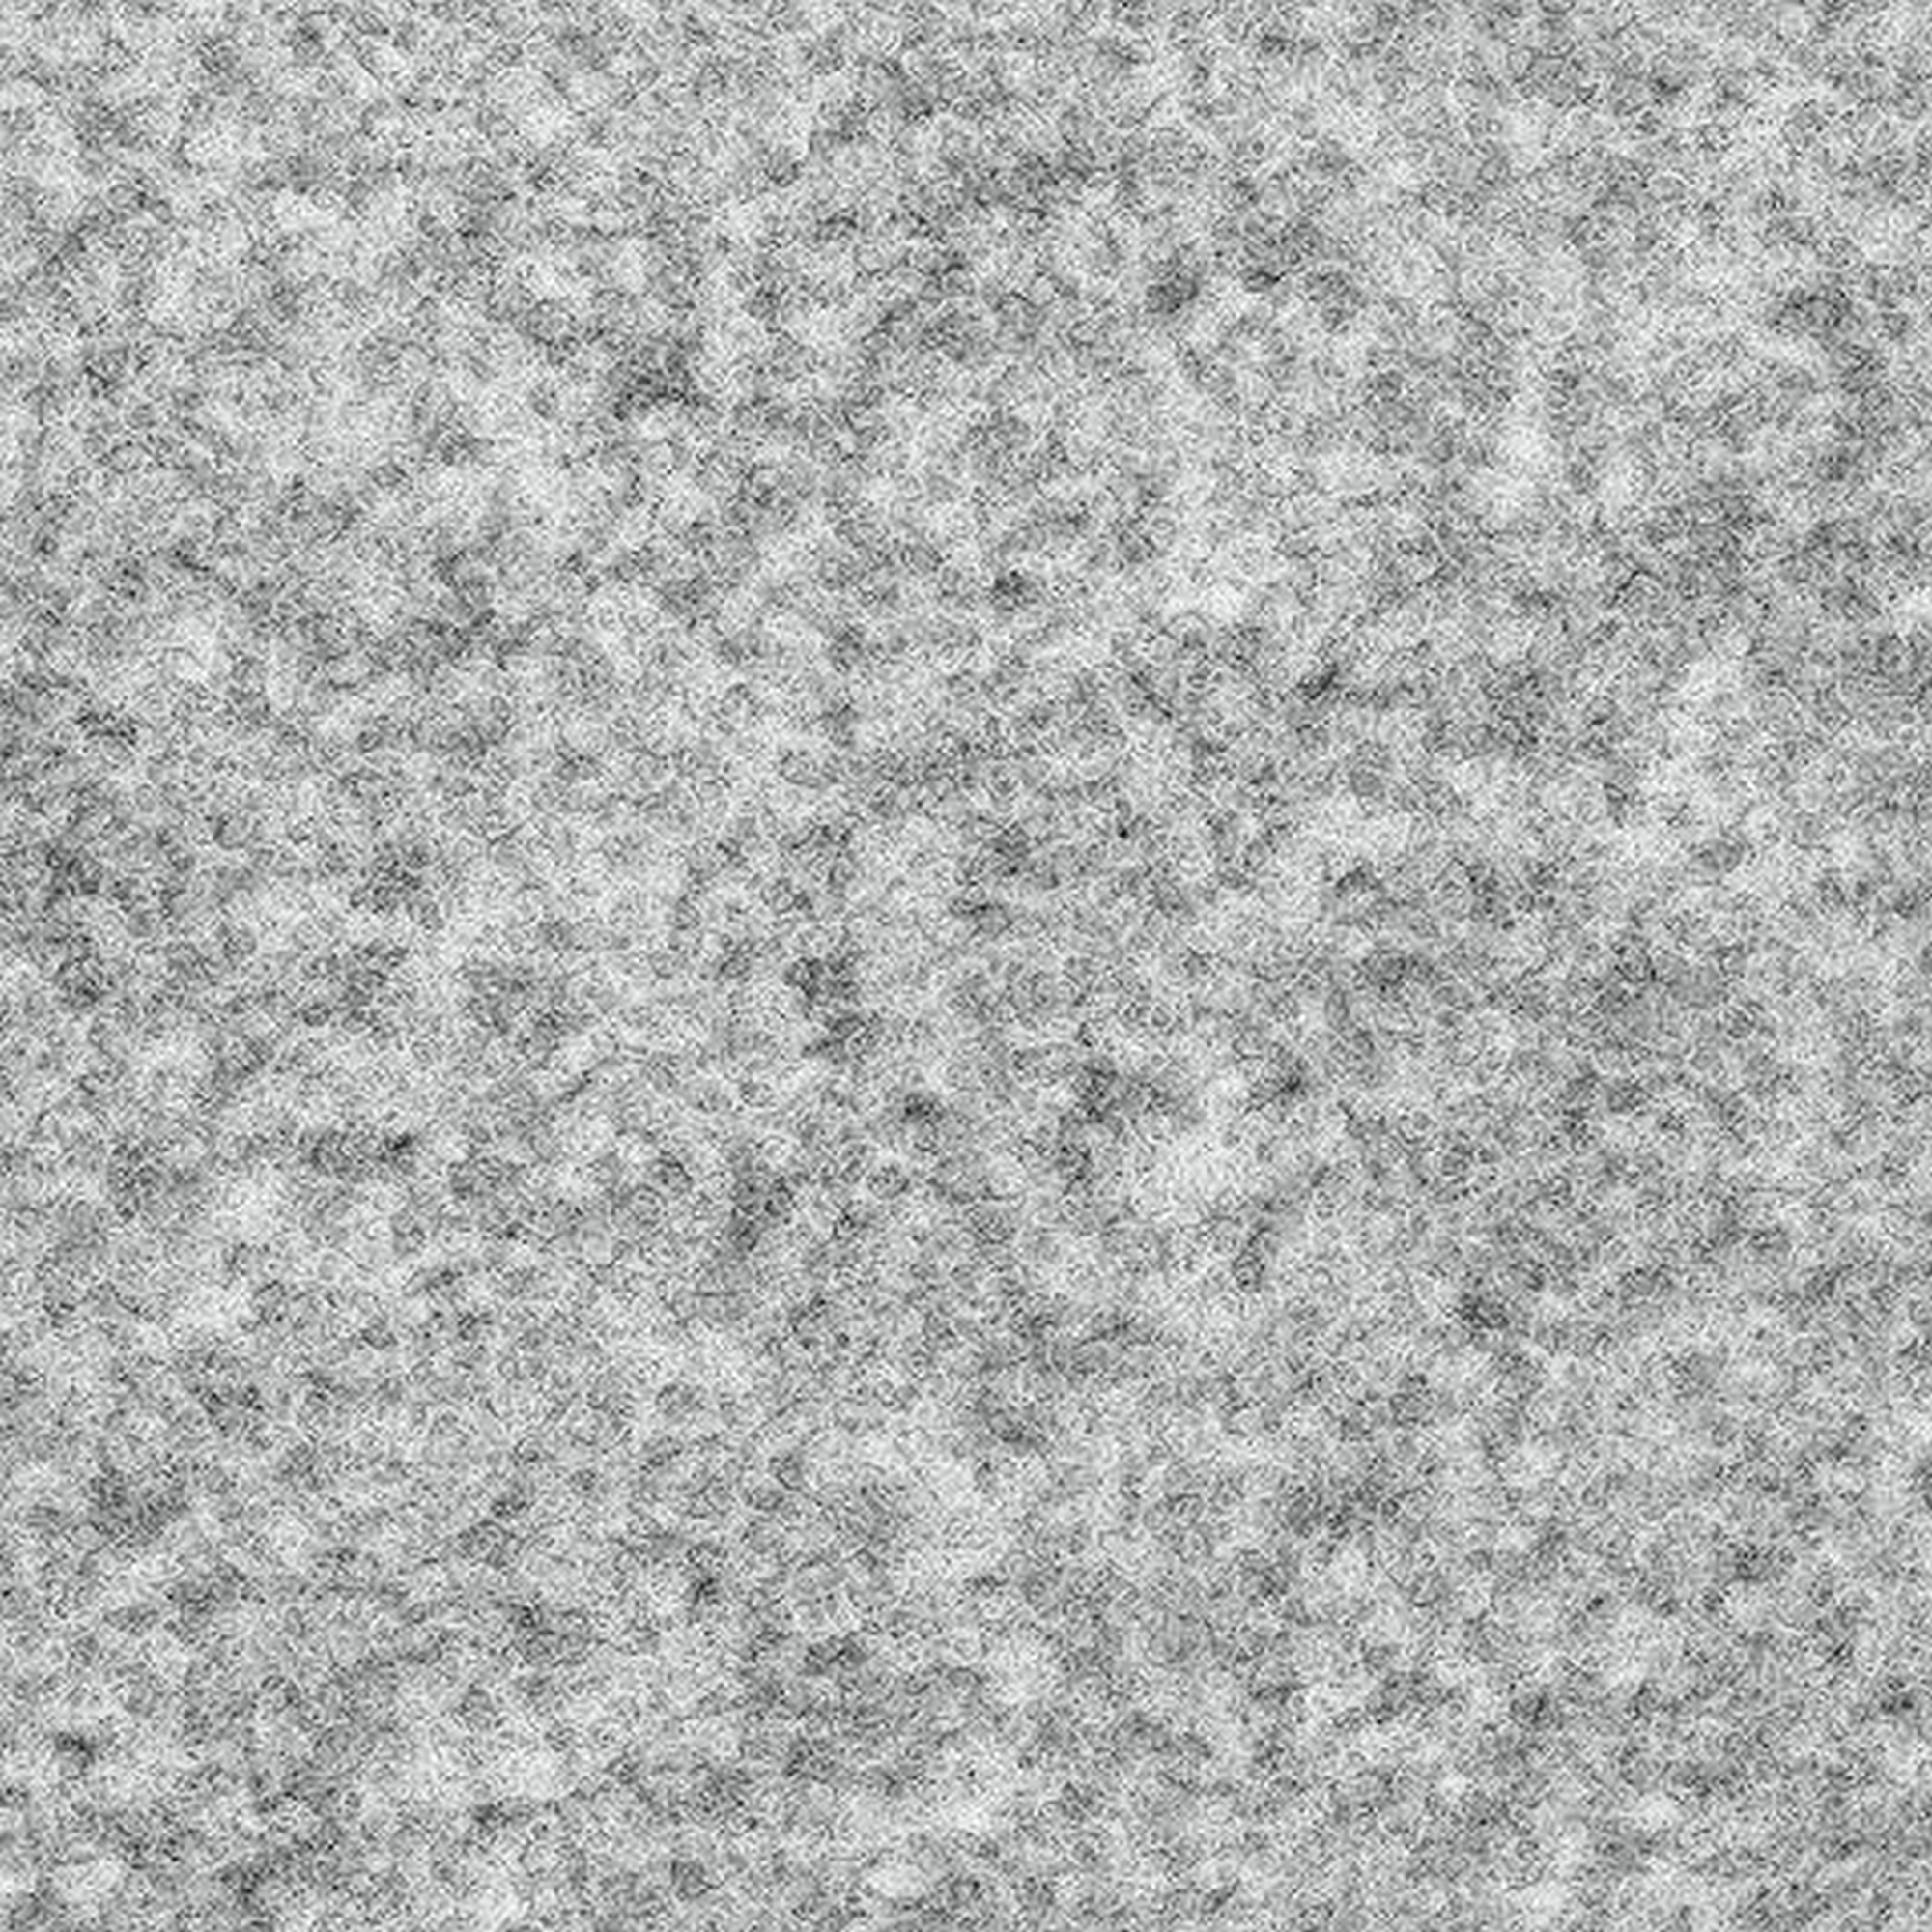 Rasenteppich 'Ambrosia No. 910' 200 x 3000 cm grau + product picture